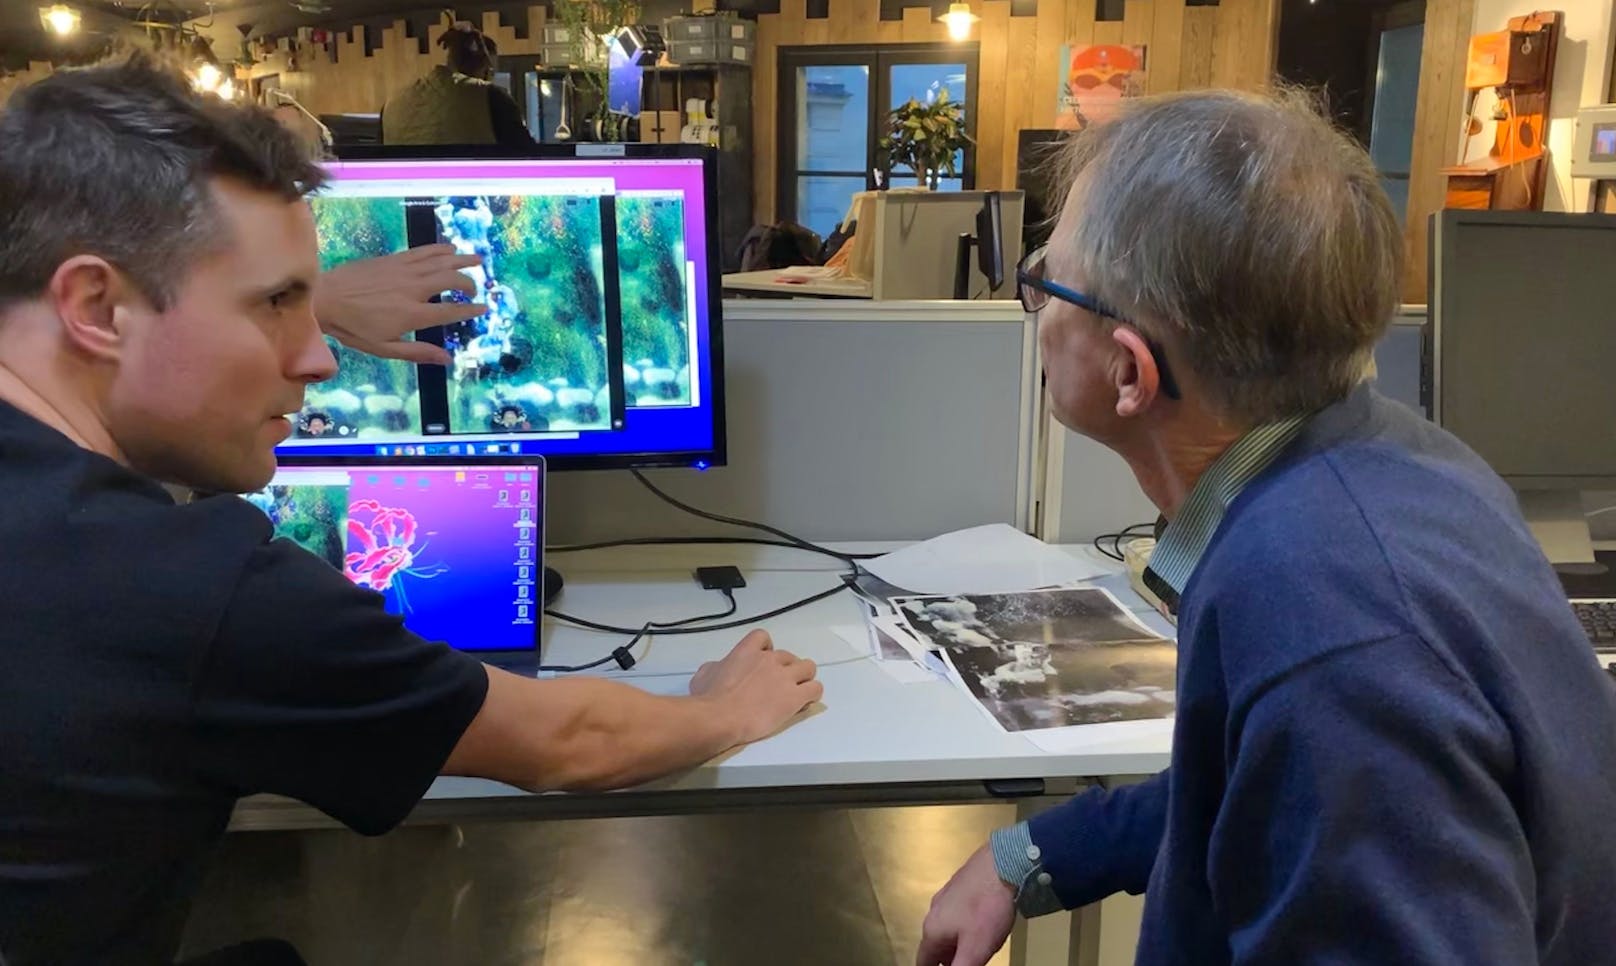 Es gibt eine einzigartige virtuelle Ausstellung, die Klimts Meisterwerke durch Augmented Reality und 3D in alle Wohnzimmer bringt, einen virtuellen Rundgang durch Klimts Atelier und mehr als 60 Klimt-Werke in ultrahoher Auflösung.